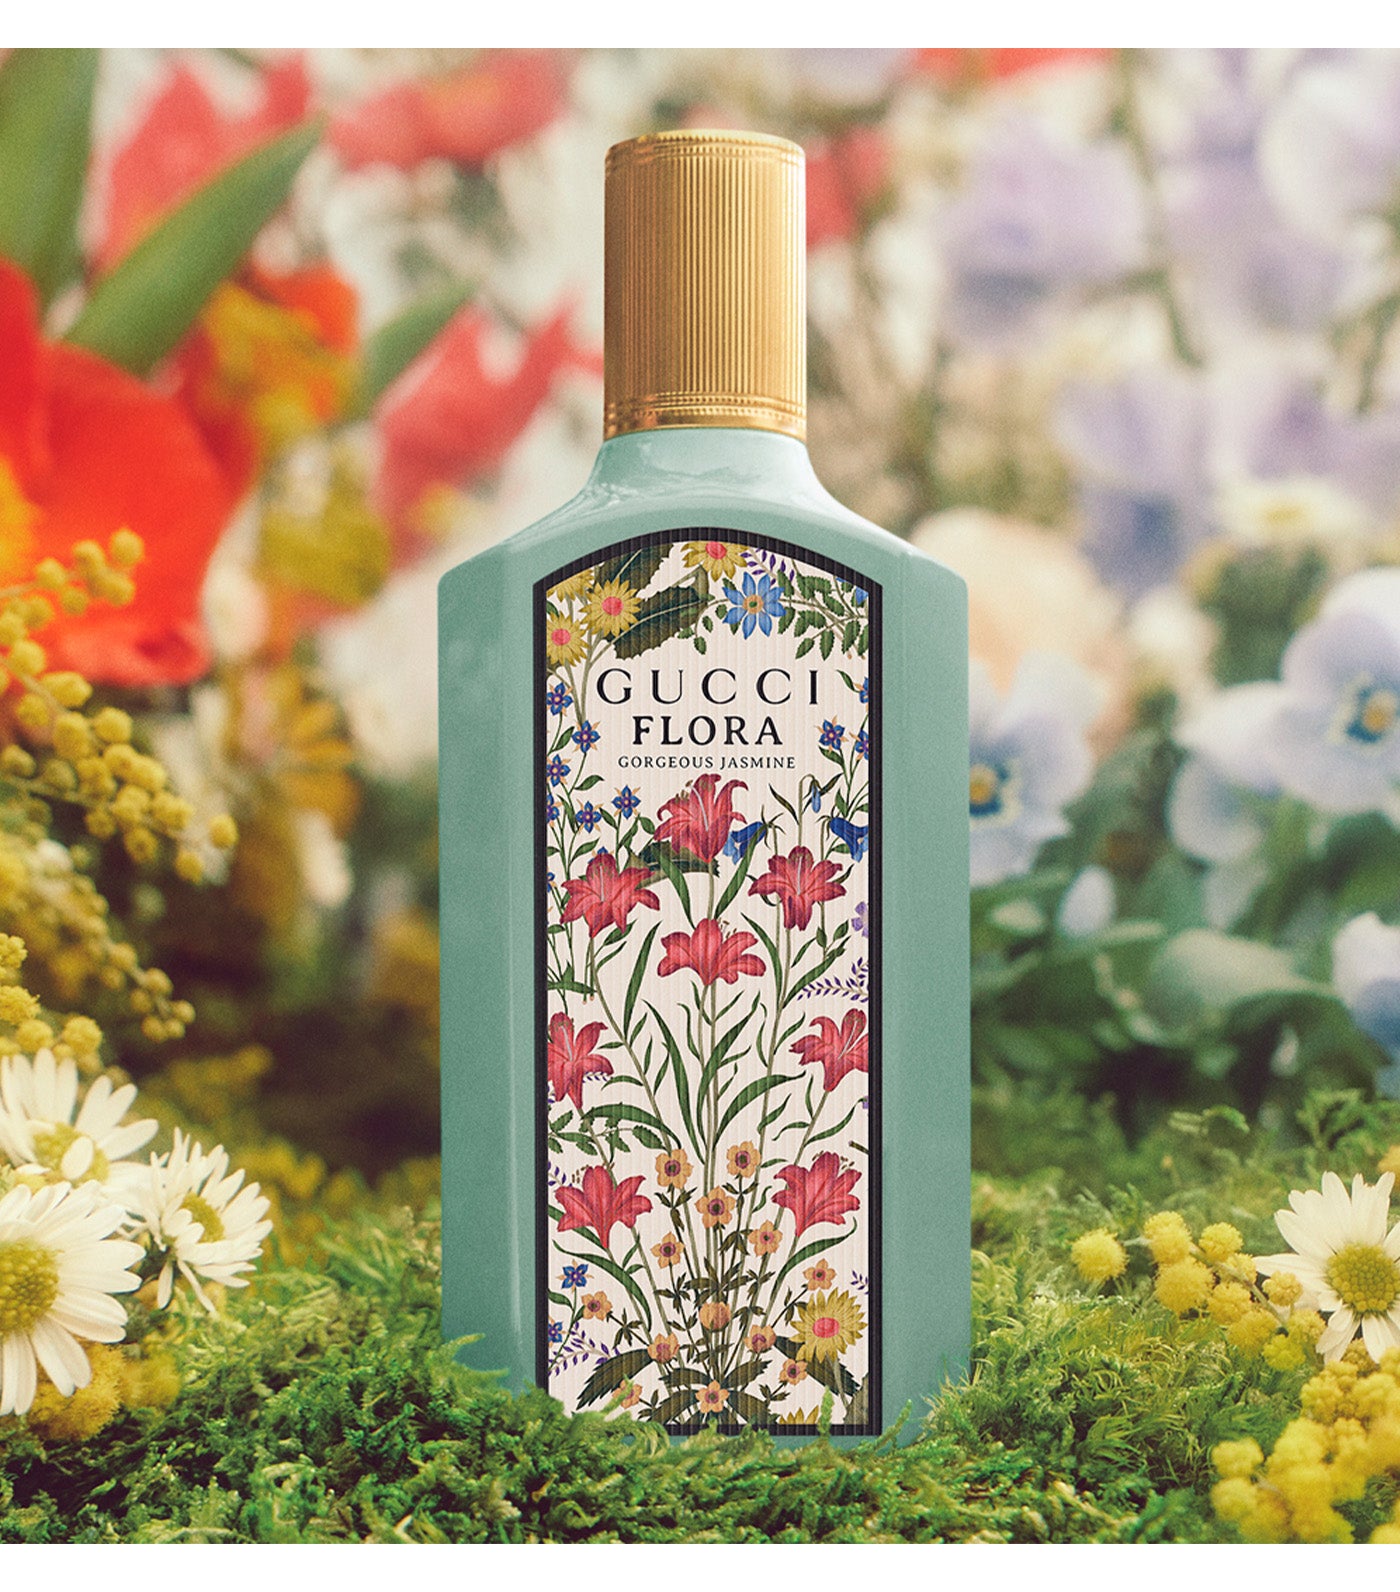 Flora Gorgeous Jasmine Eau de Parfum for Women